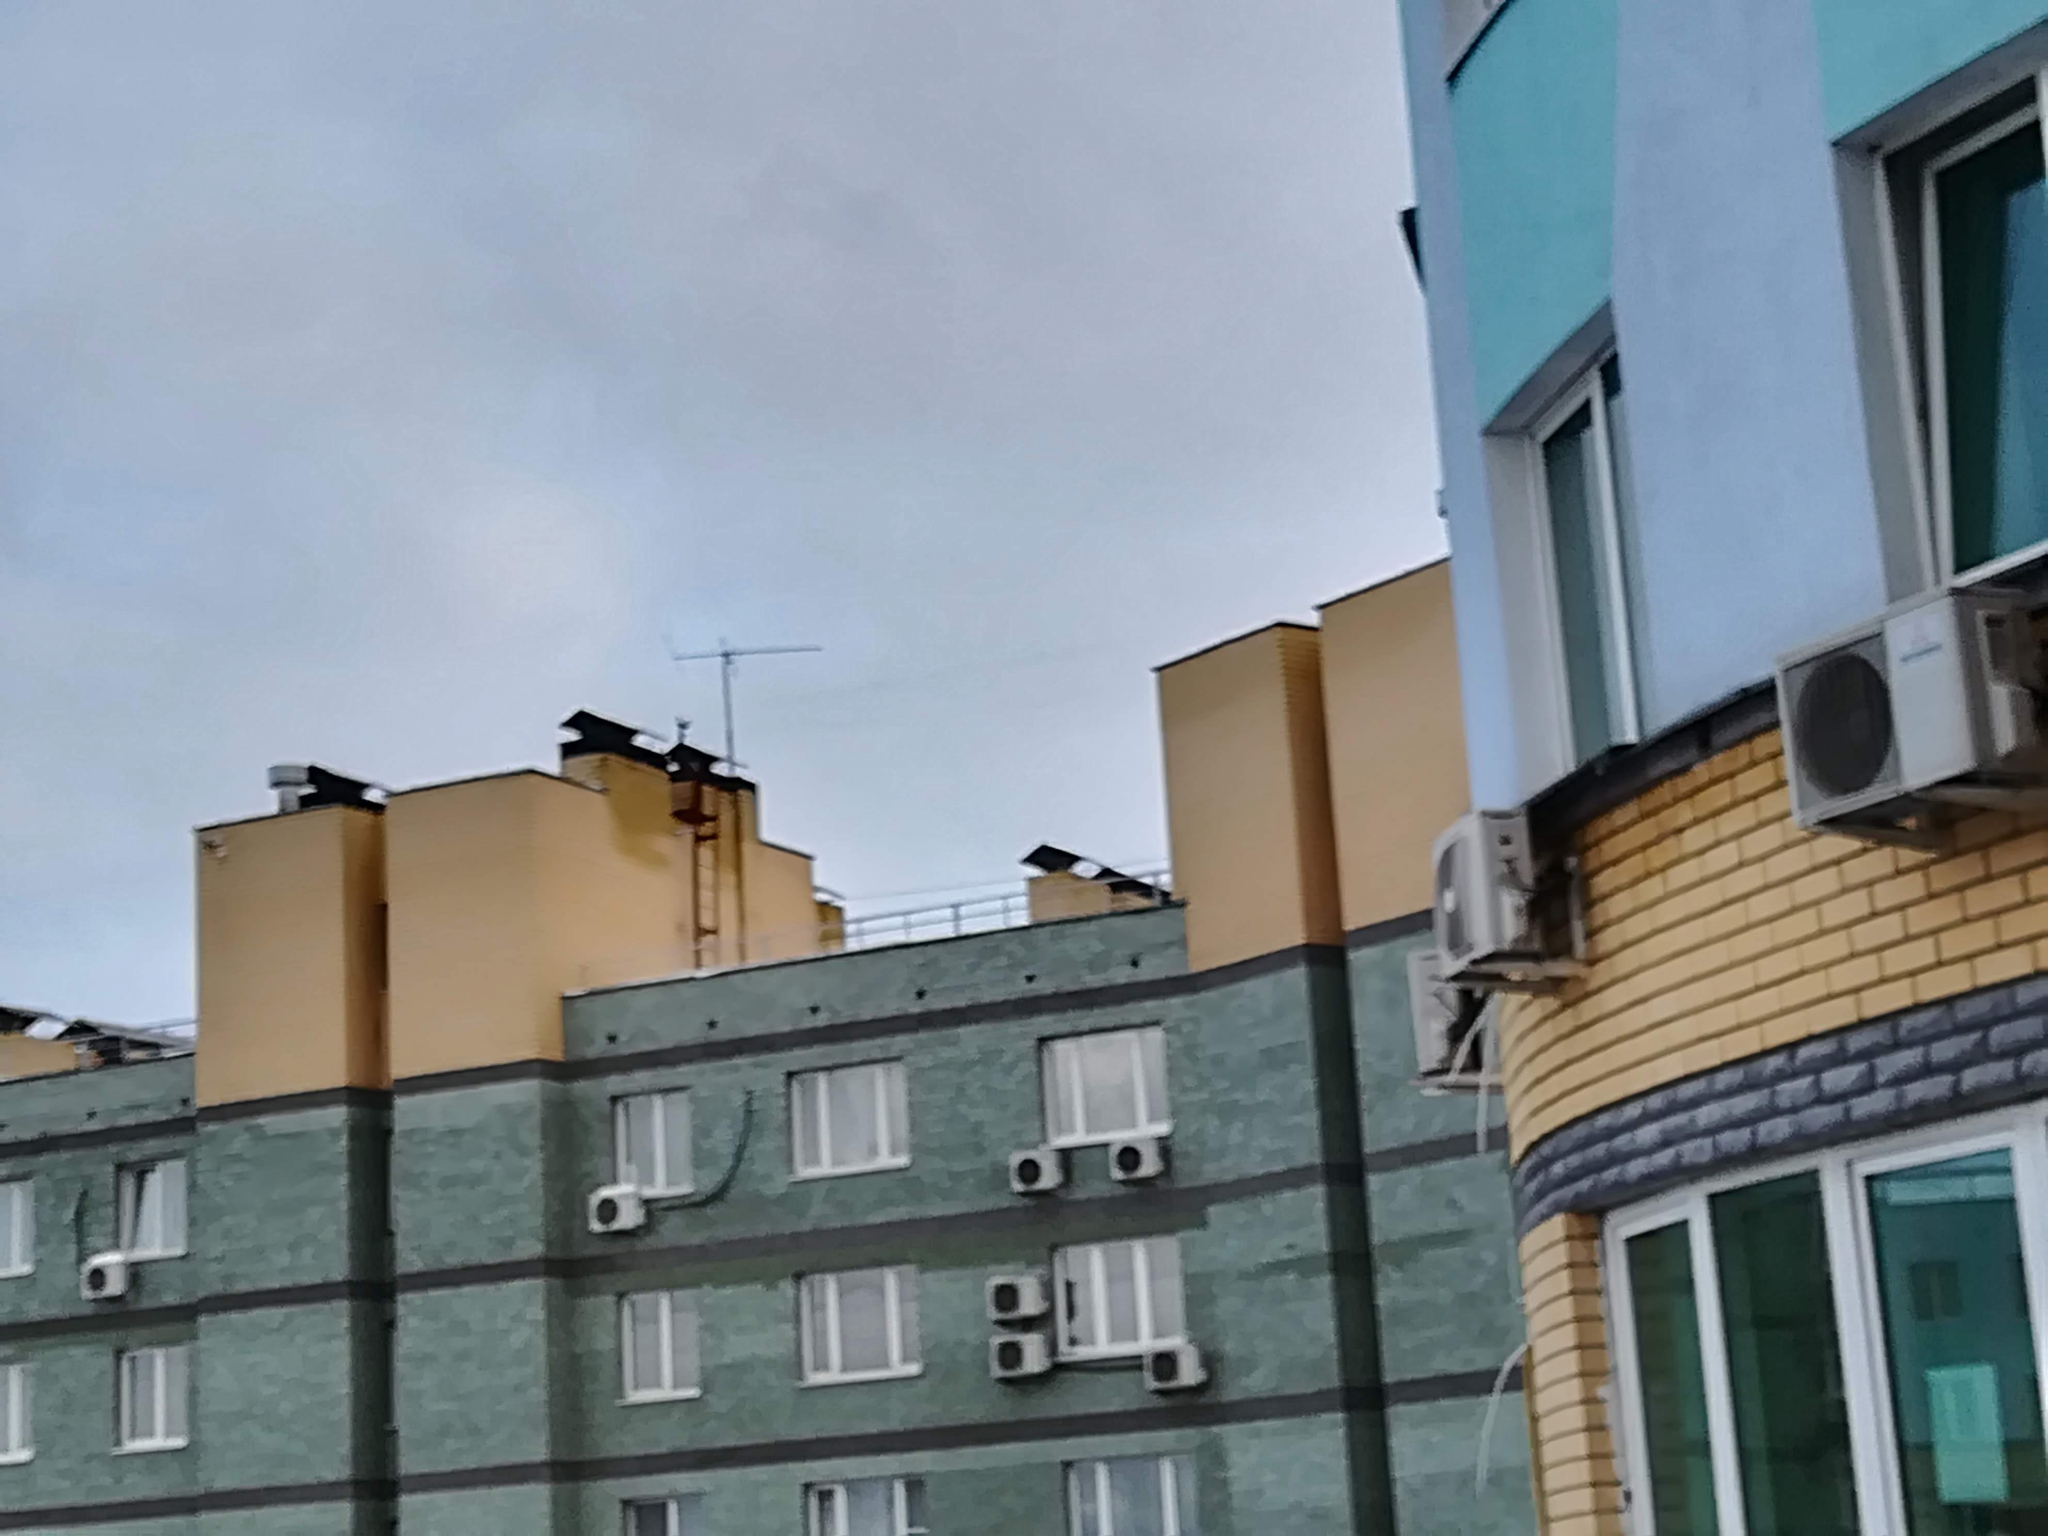 Нижний Новгород возглавил рейтинг российских городов по доступности ипотеки